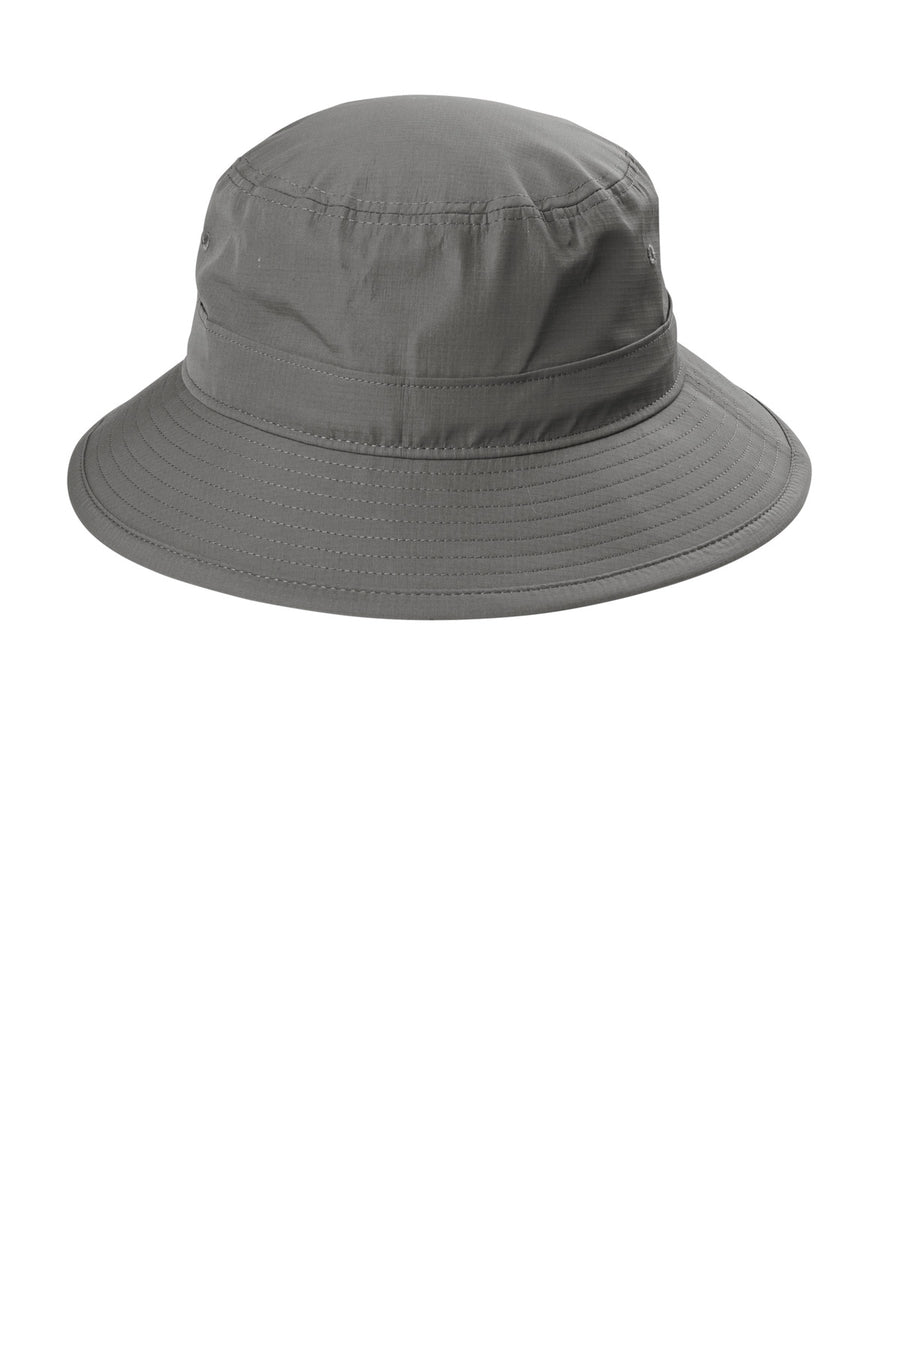 Port Authority¬Æ Outdoor UV Bucket Hat C948